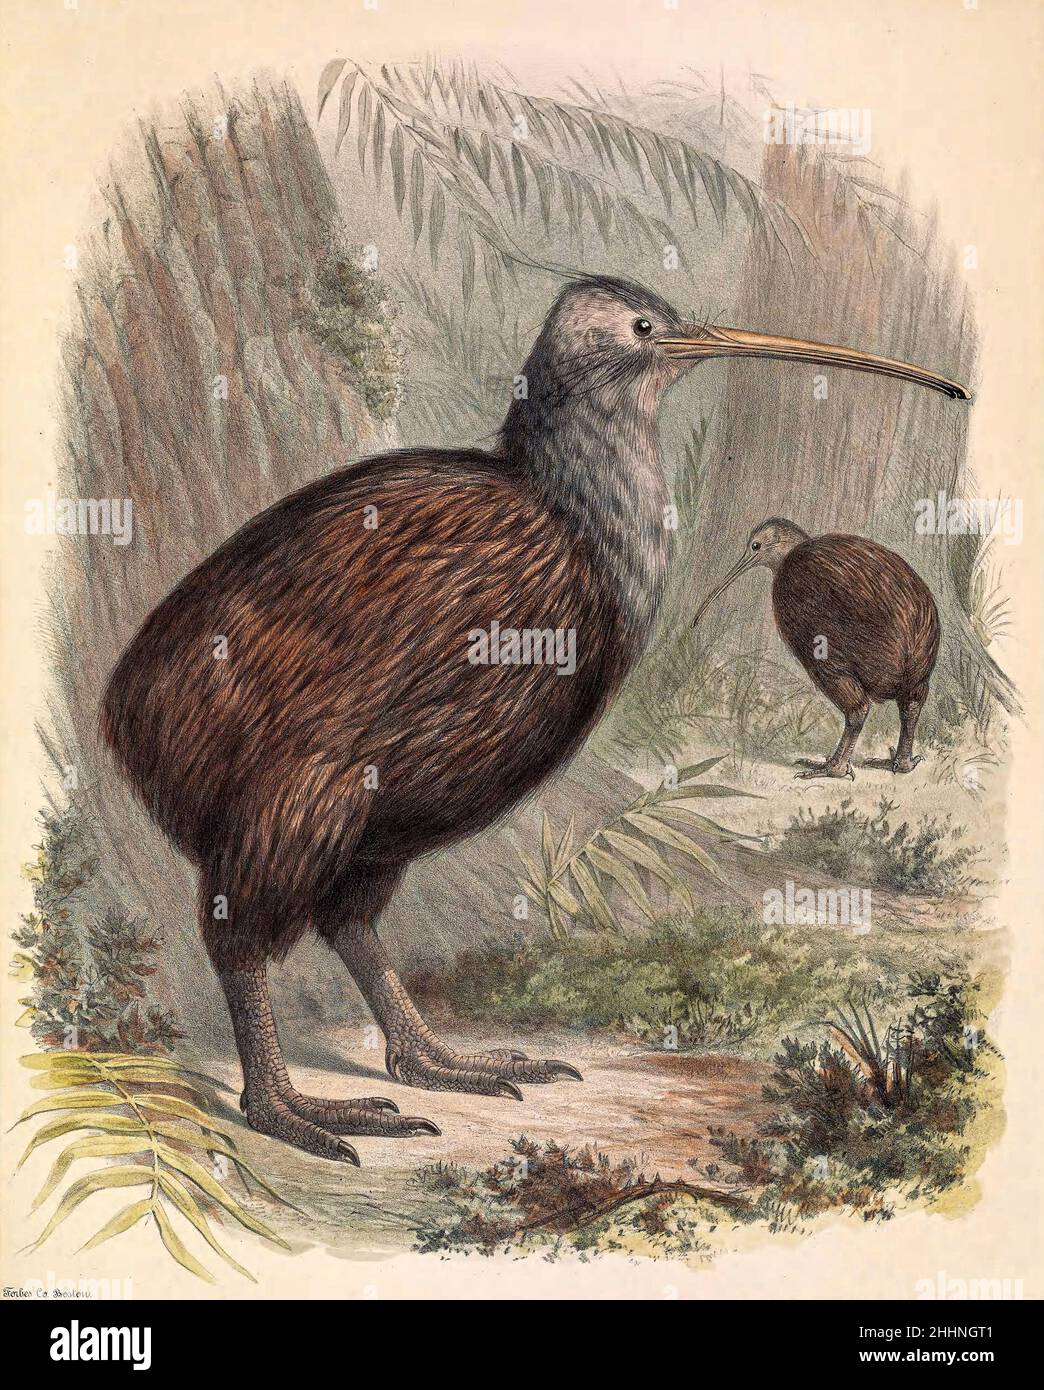 Ornithology New Zealand wildlife illustration Kiwi bird art print Antique animal wall art Vintage natural history painting Exotic birds